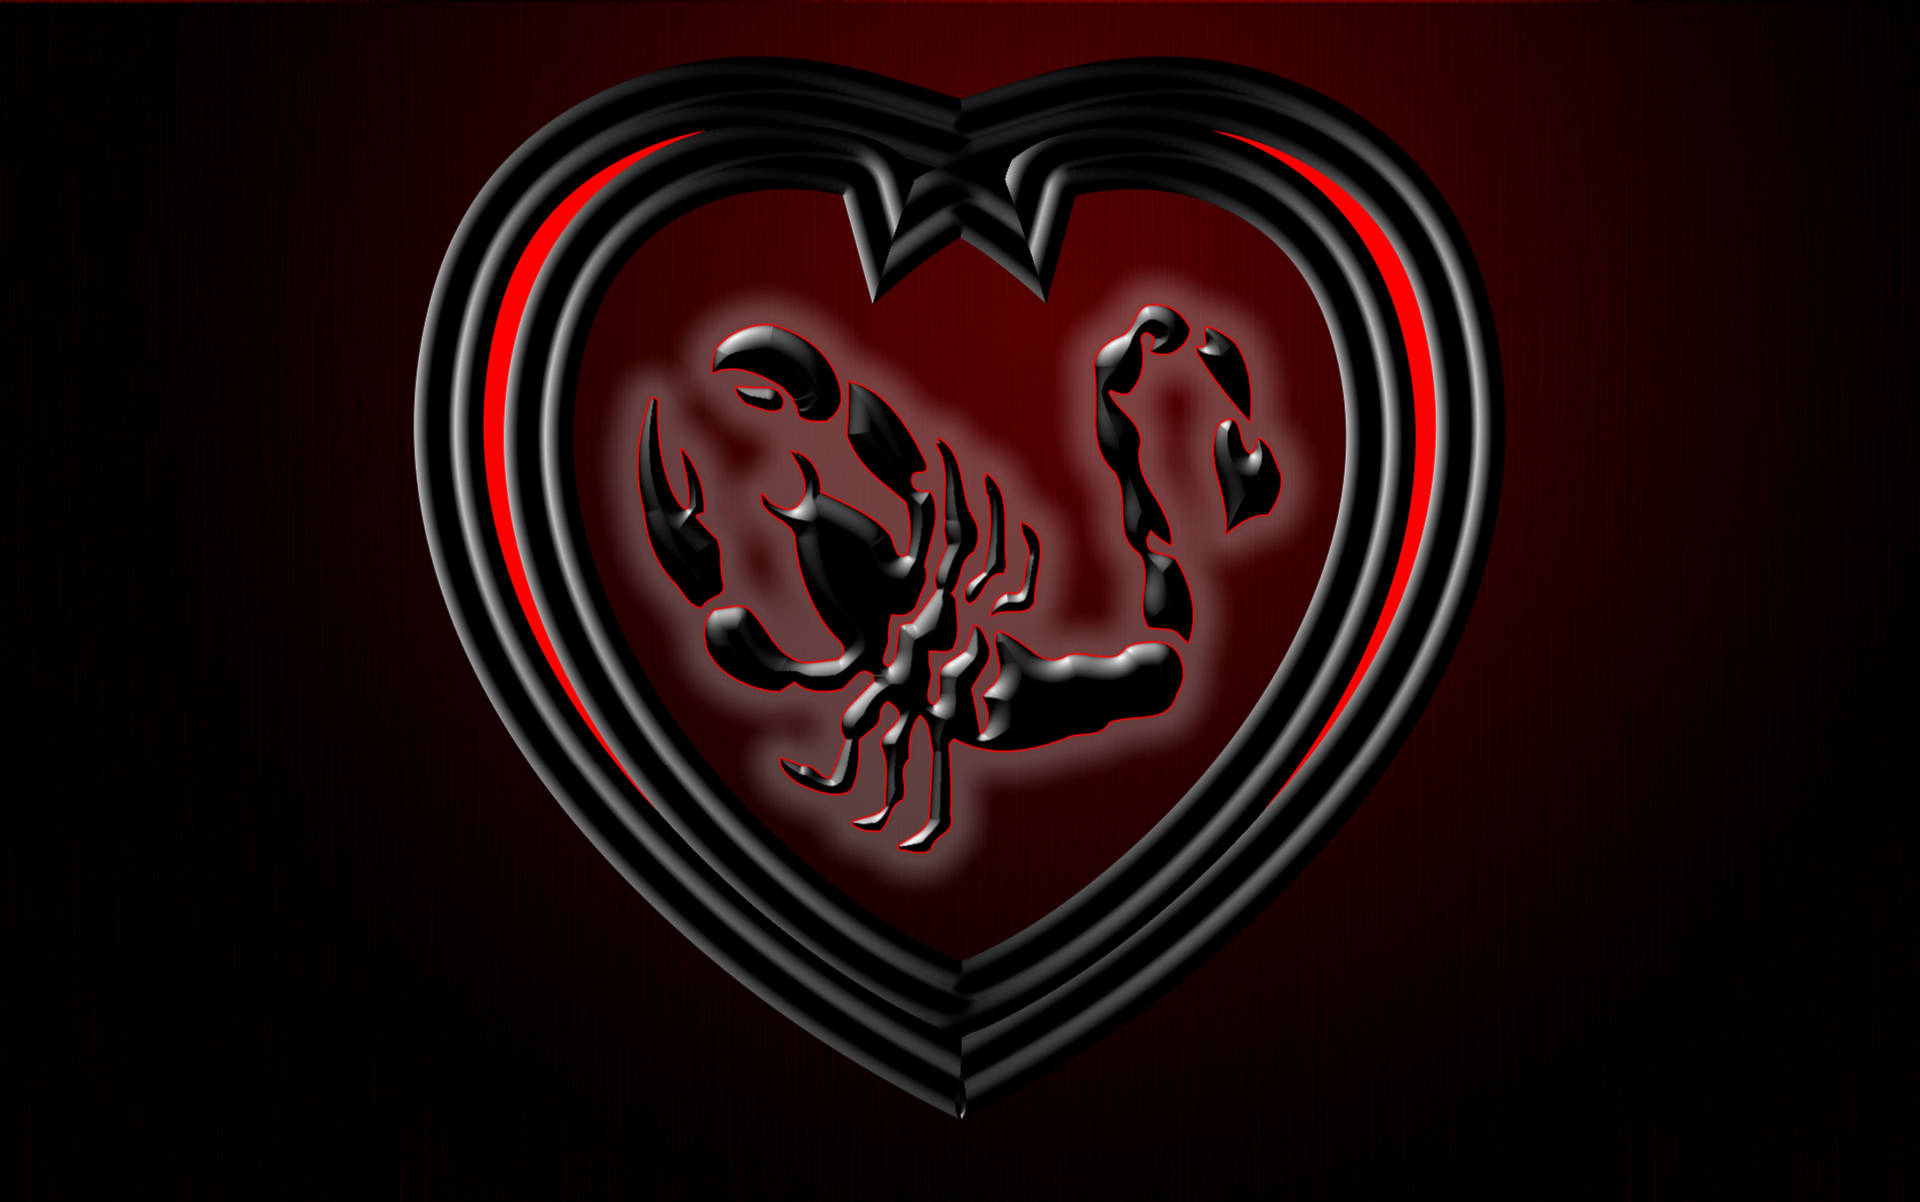 Scorpion Heart Dark Abstract Art